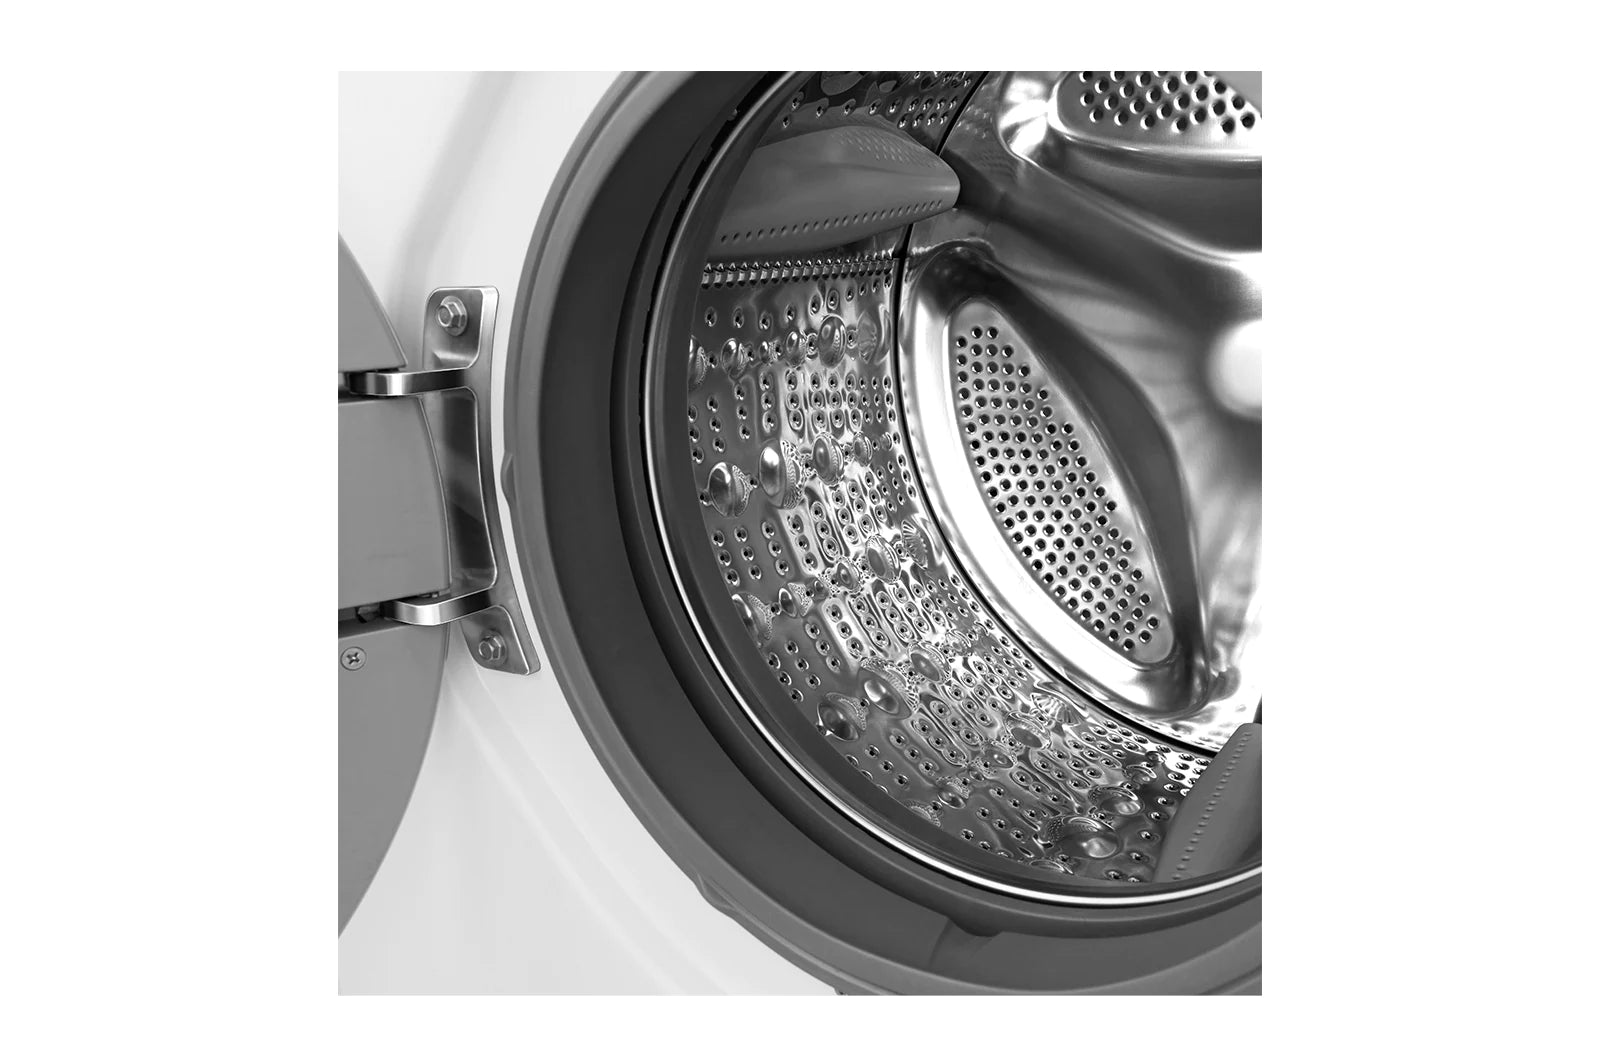 LG 樂金 WF - CT1408MW 8公升洗衣/5公斤乾衣 1400轉 洗衣乾衣機 - Fever Electrics 電器熱網購平台